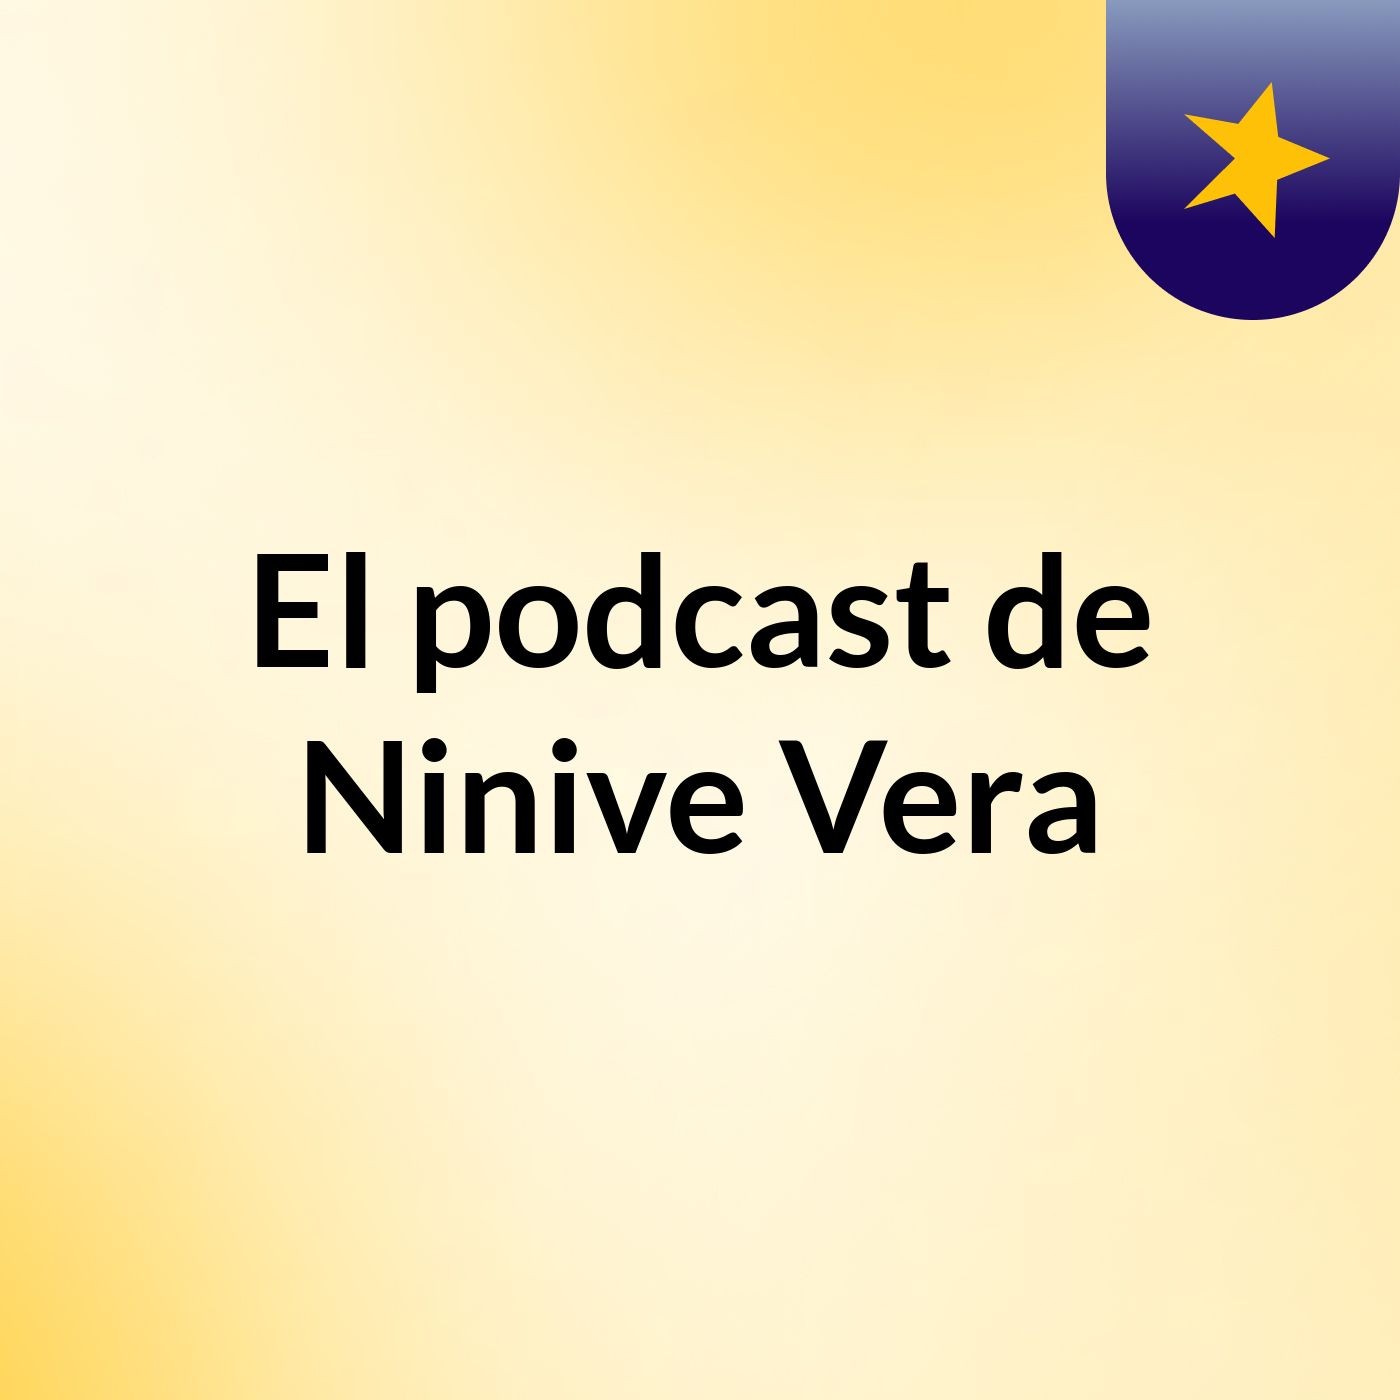 El podcast de Ninive Vera